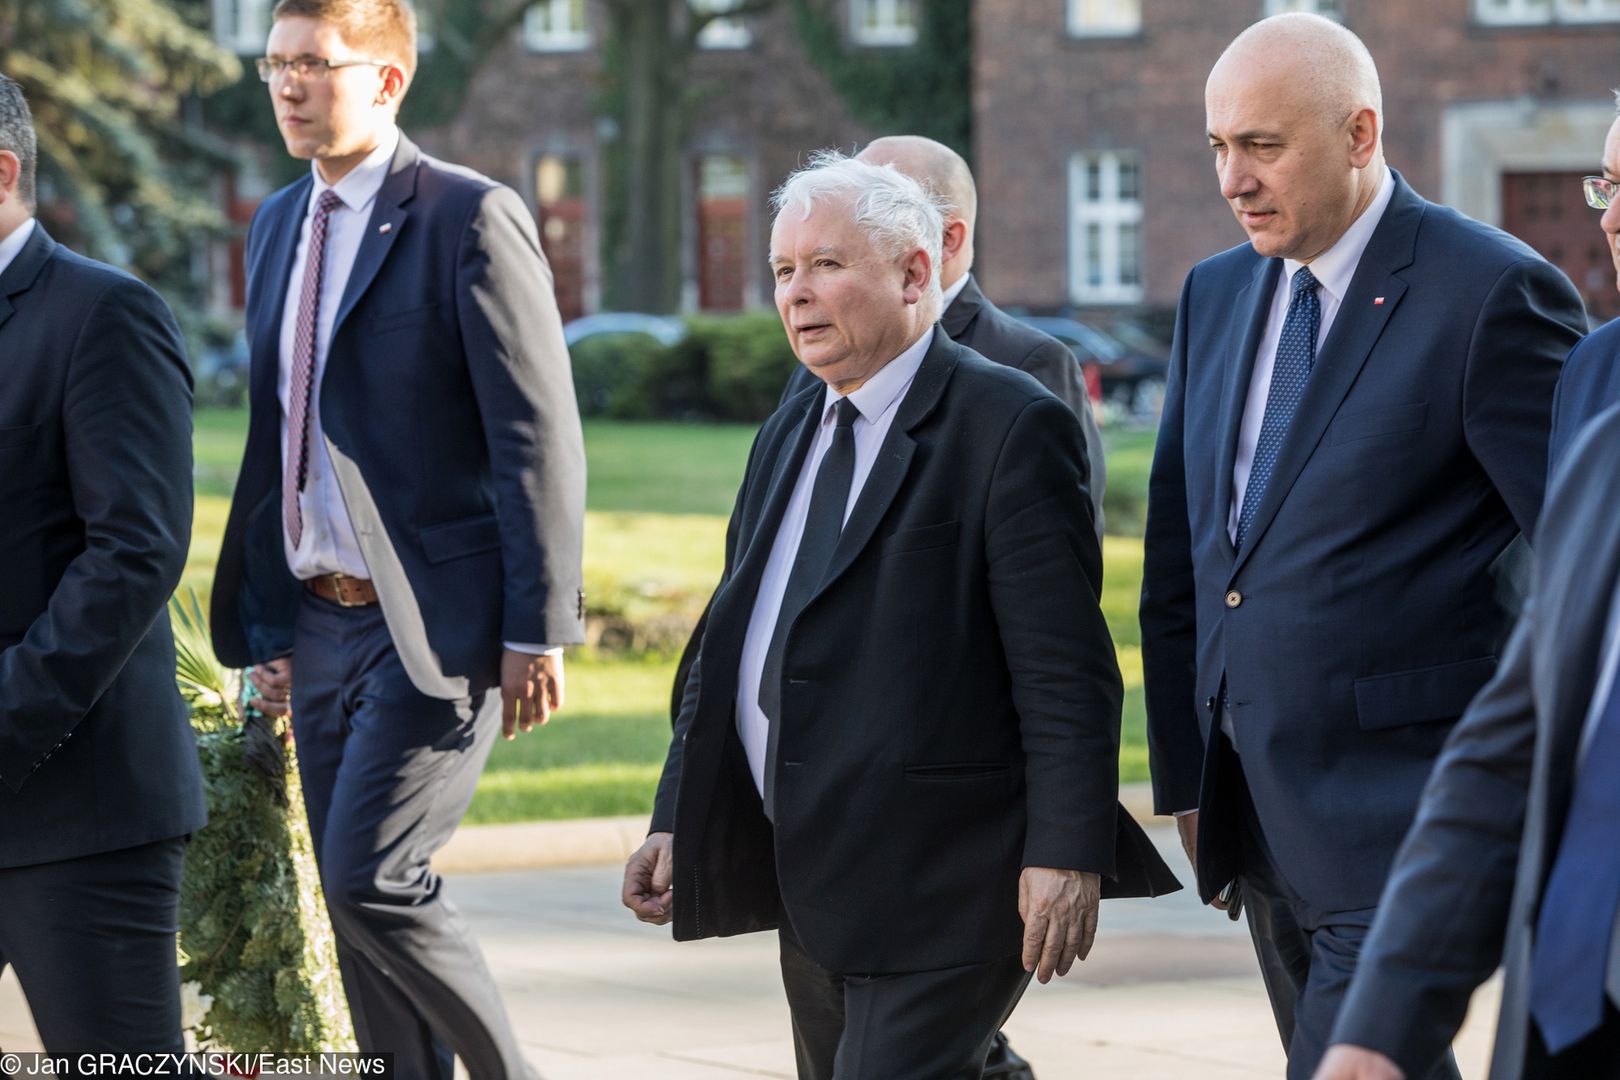 Kaczyński bada sytuację czy faktycznie rezygnuje?